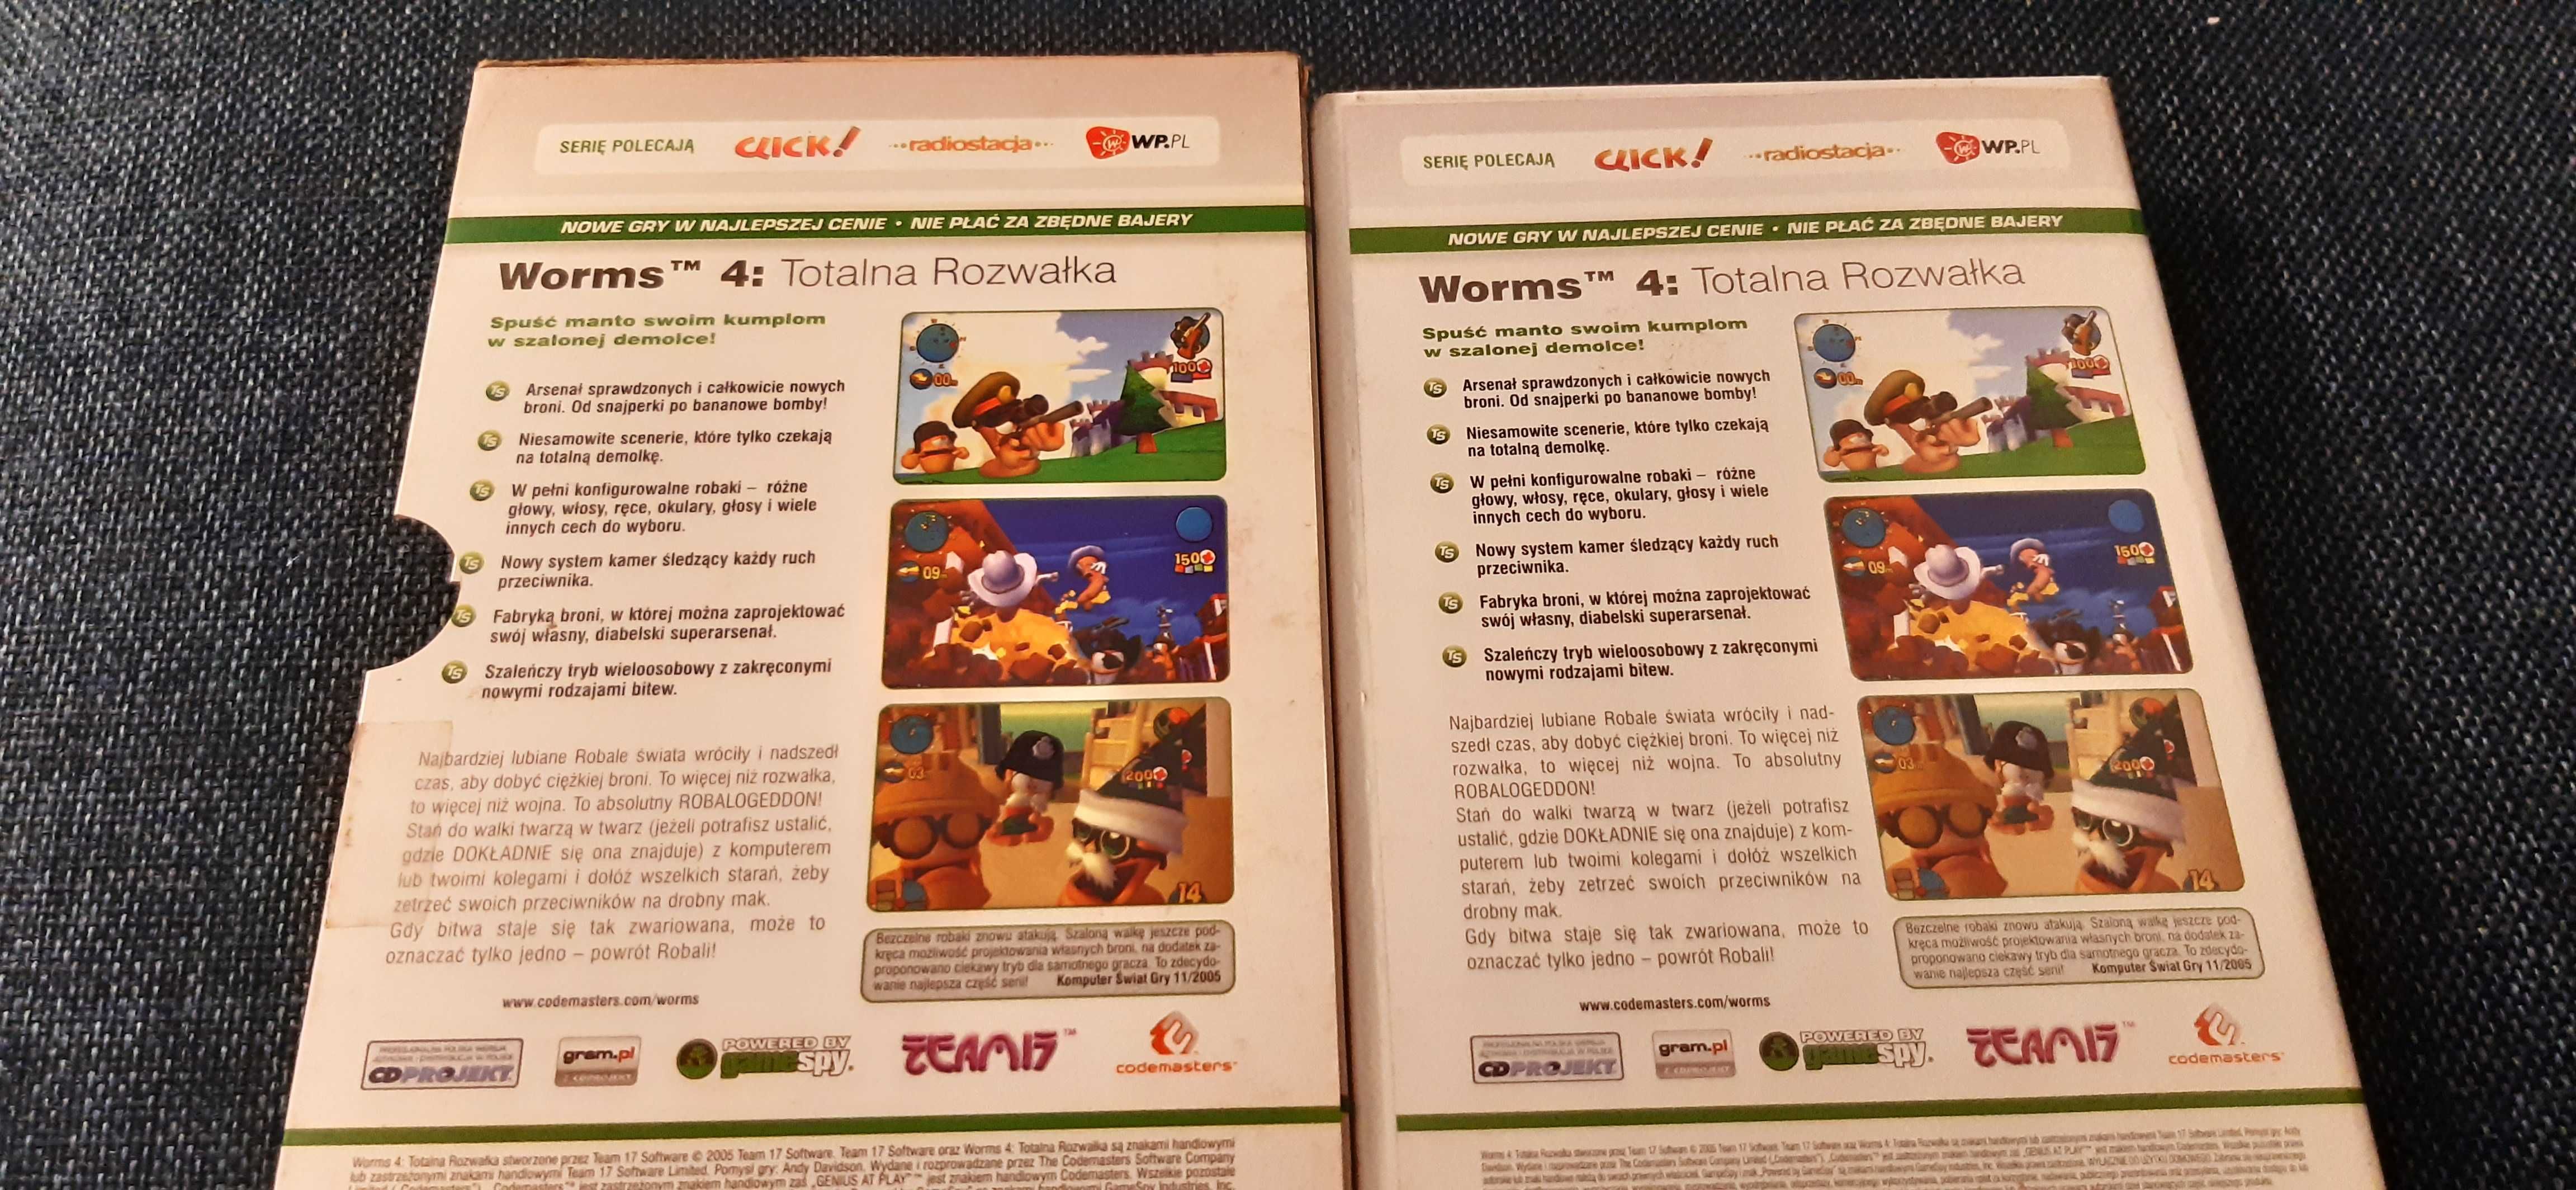 Worms 4 Totalna Rozwałka Polska Wersja PL PC DVD